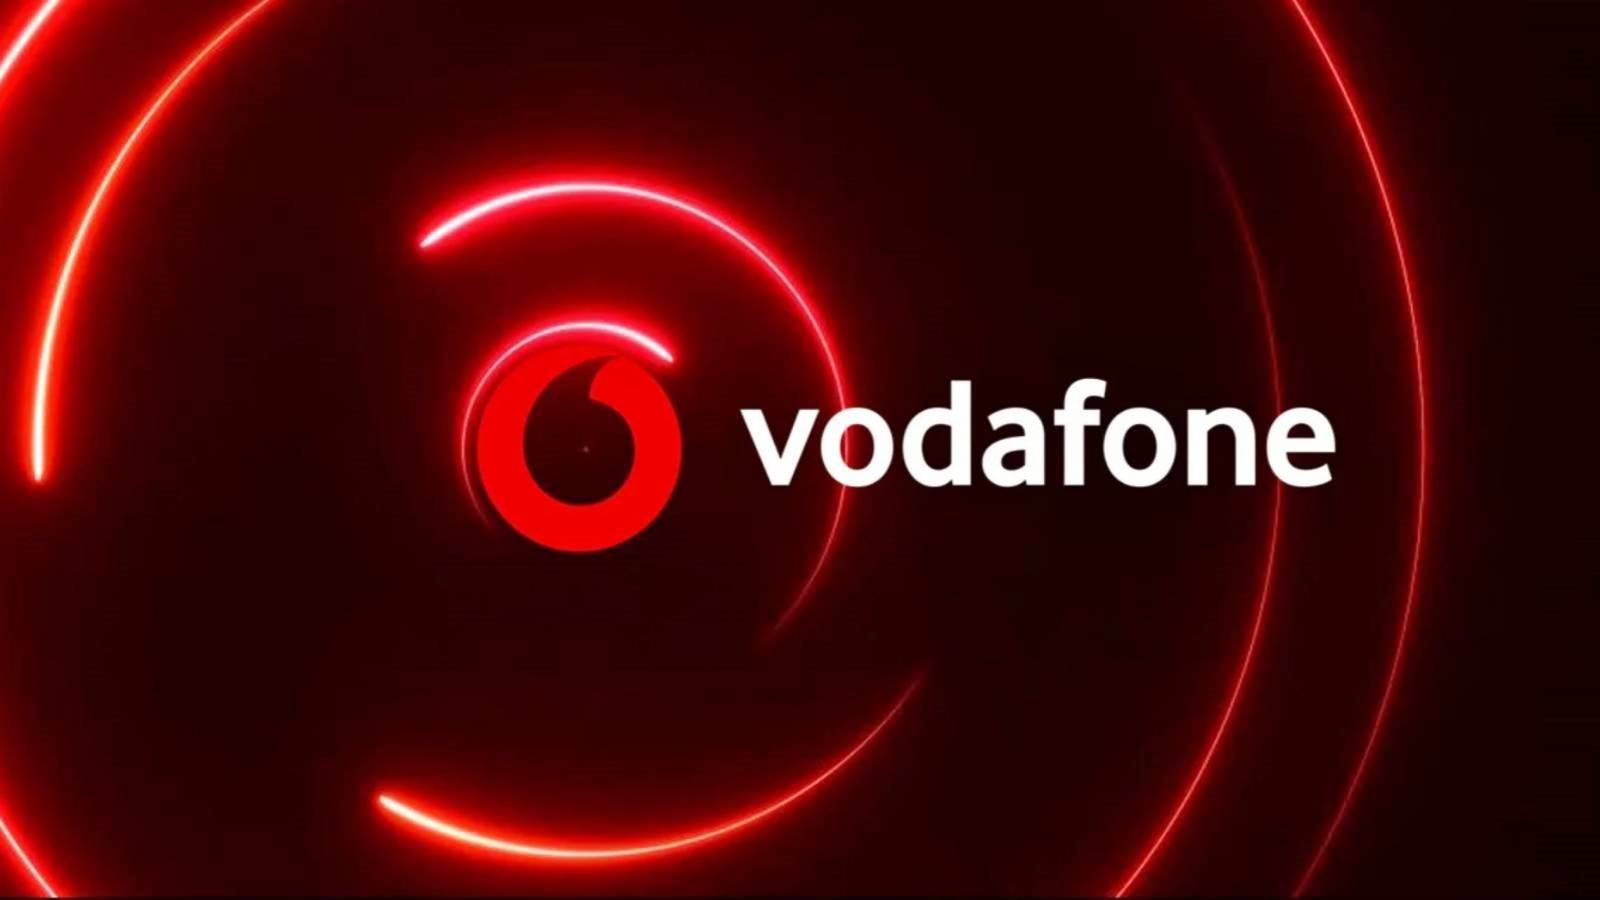 Vodafone Decisione IMPORTANTE Avvisare i clienti rumeni